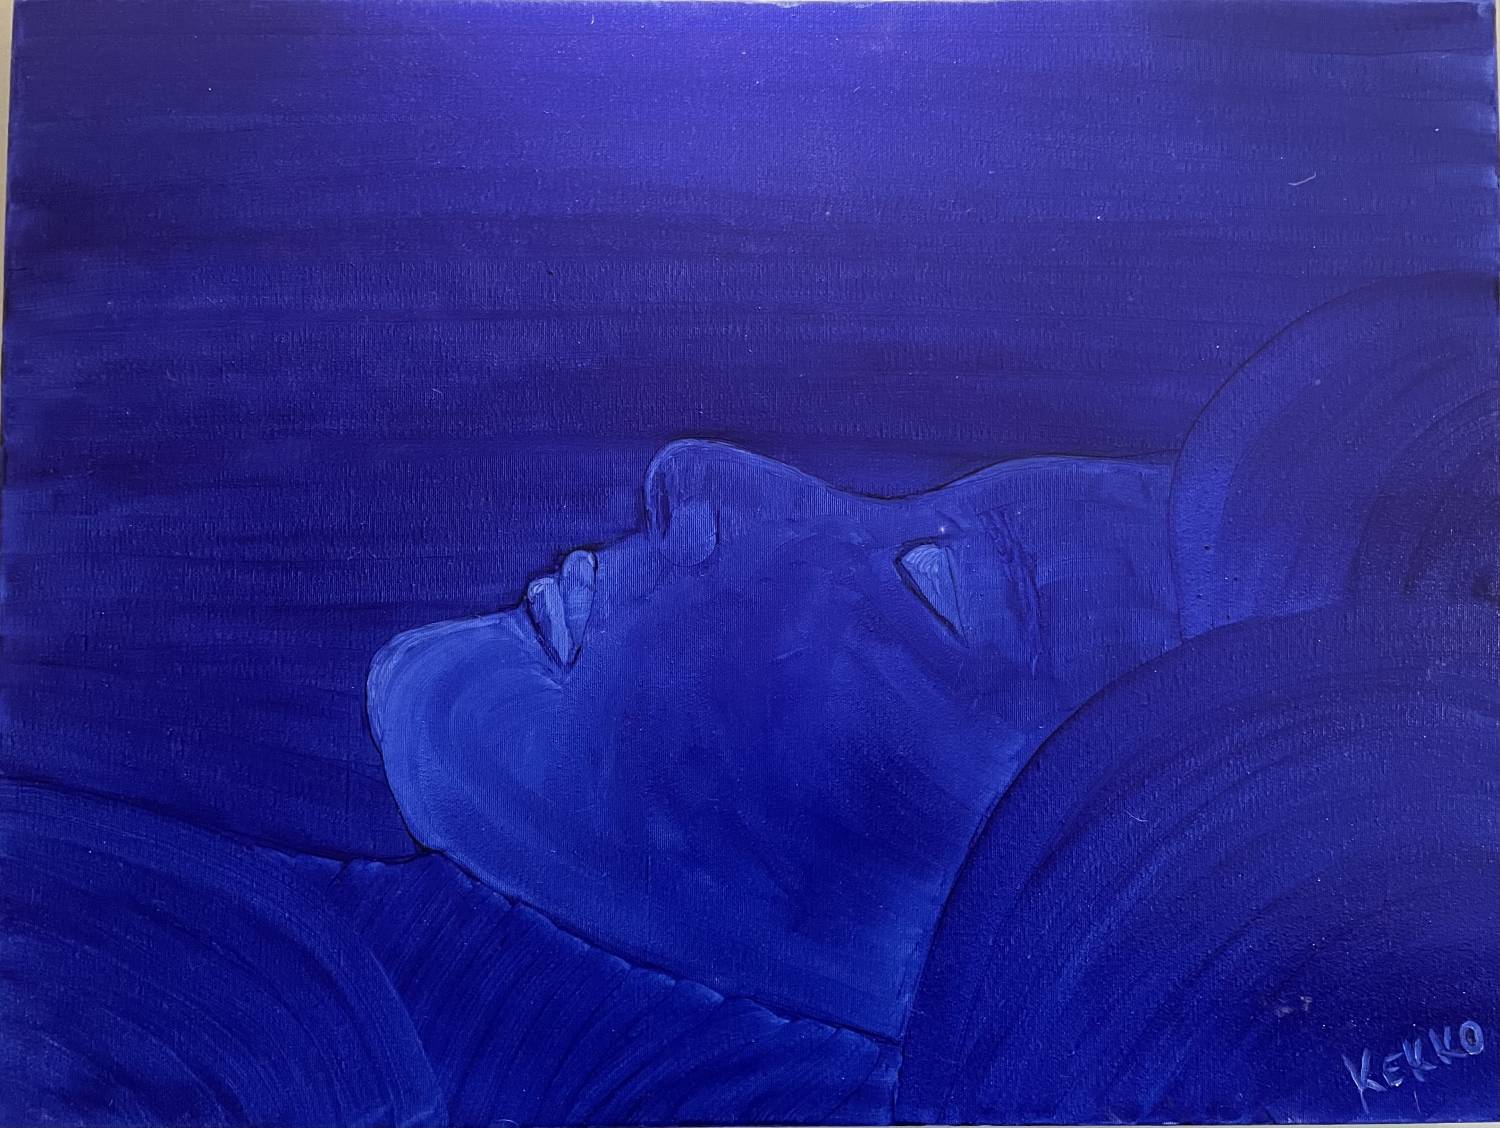 Vendita online opera di pittura a olio dal titolo "Nel blu" realizzata dall'artista contemporaneo Francesco Diana